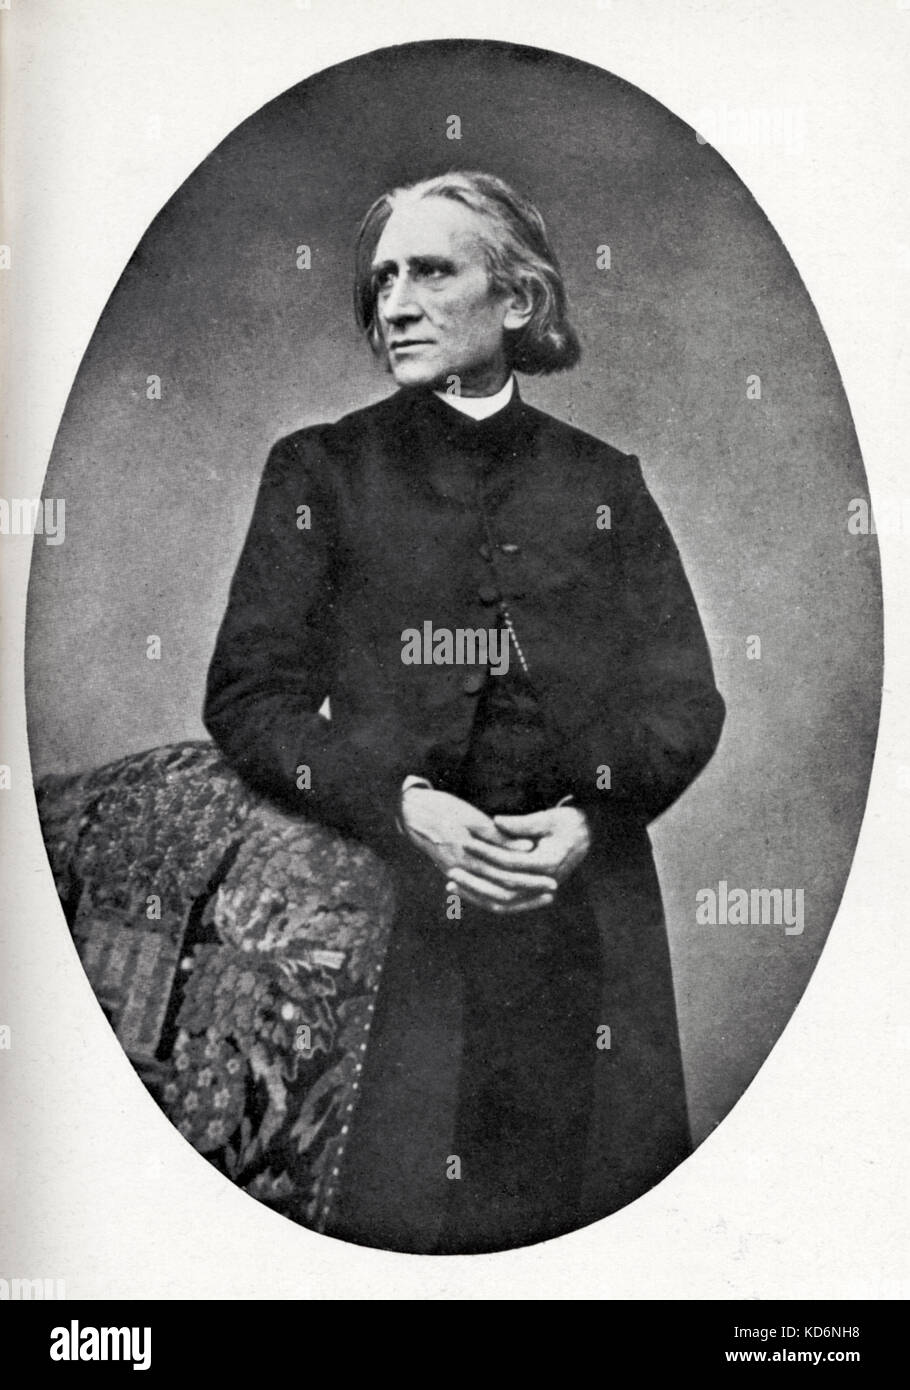 Portrait de Franz Liszt, compositeur et pianiste hongrois ovale. 22 octobre 1811 - 31 juillet 1886. Banque D'Images